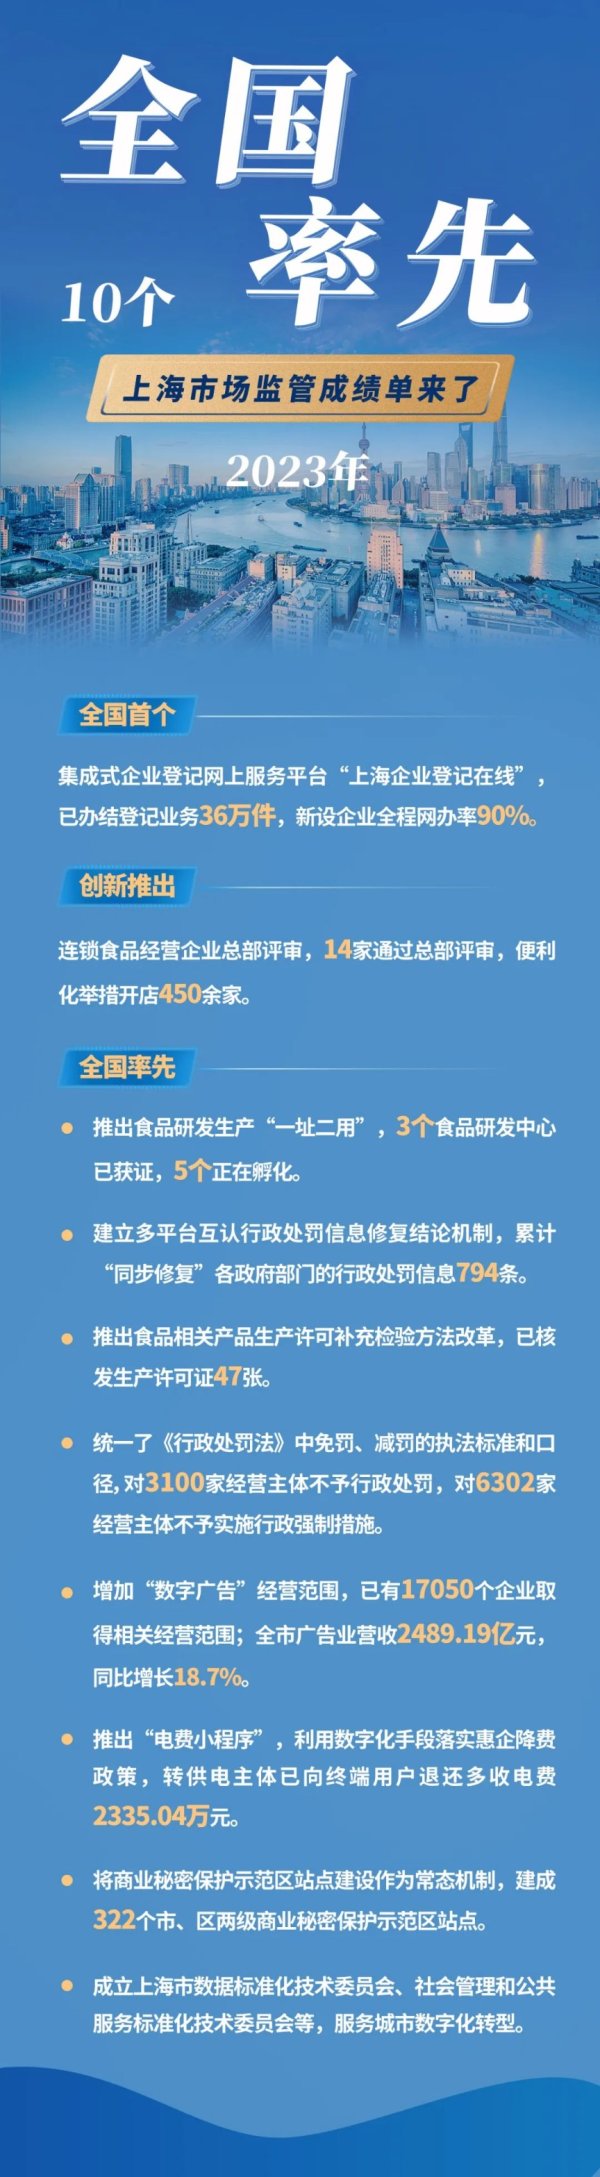 2023年上海新设经营主体53.55万户 同比增长29.1%